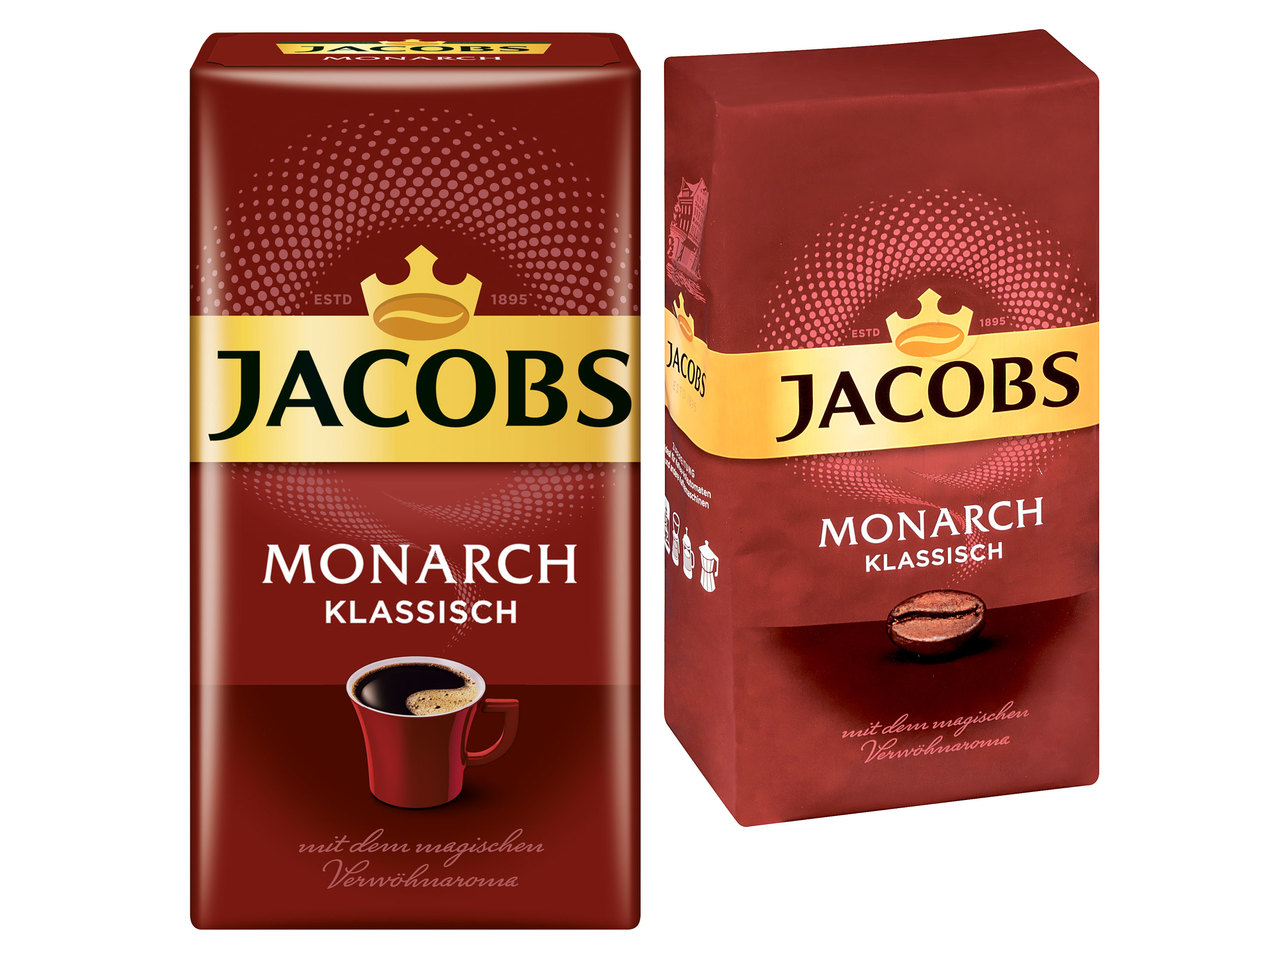 JACOBS Monarch klassisch